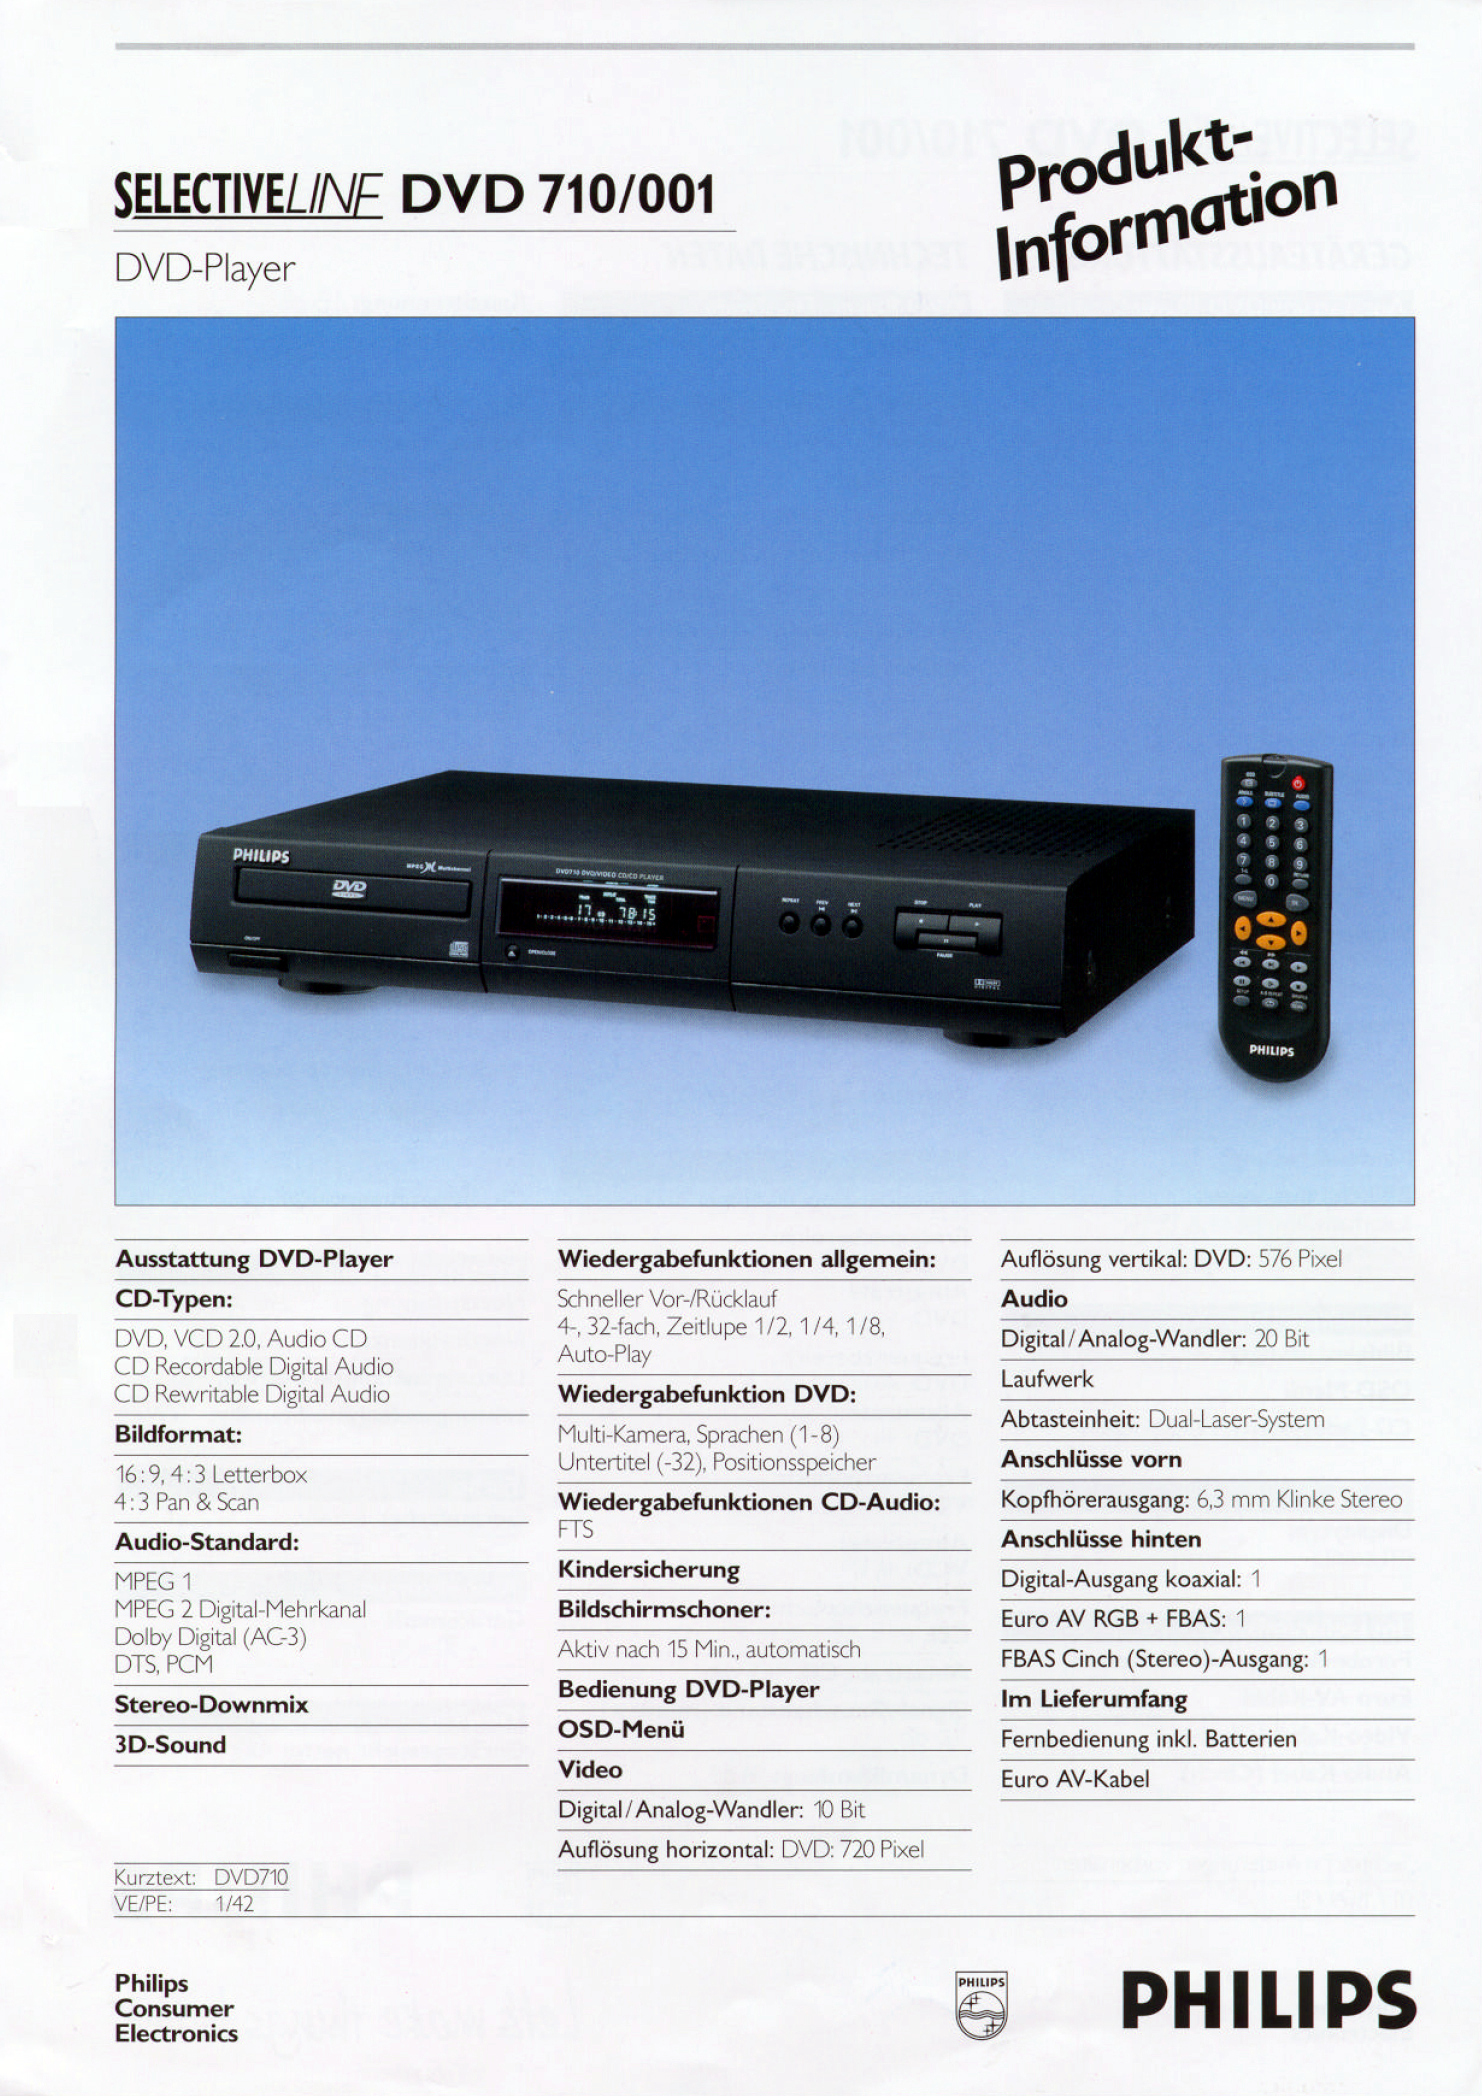 Philips DVD-710-Prospekt-1999.jpg